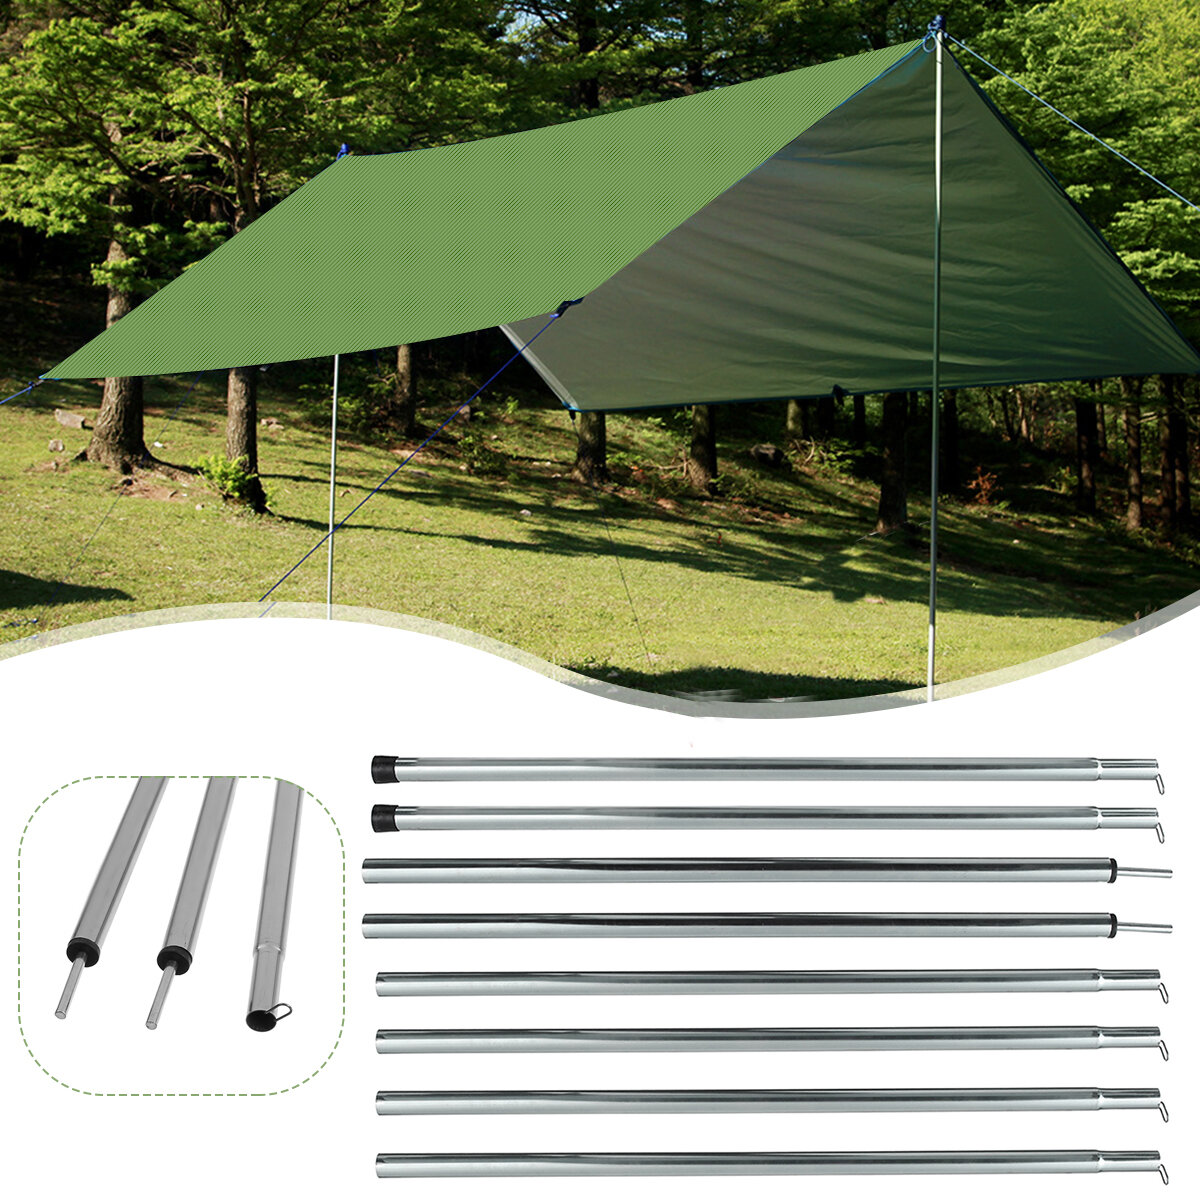 Varetas de suporte de fibra de vidro de 200 cm para barracas de camping, molduras de toldos, acessórios para barracas